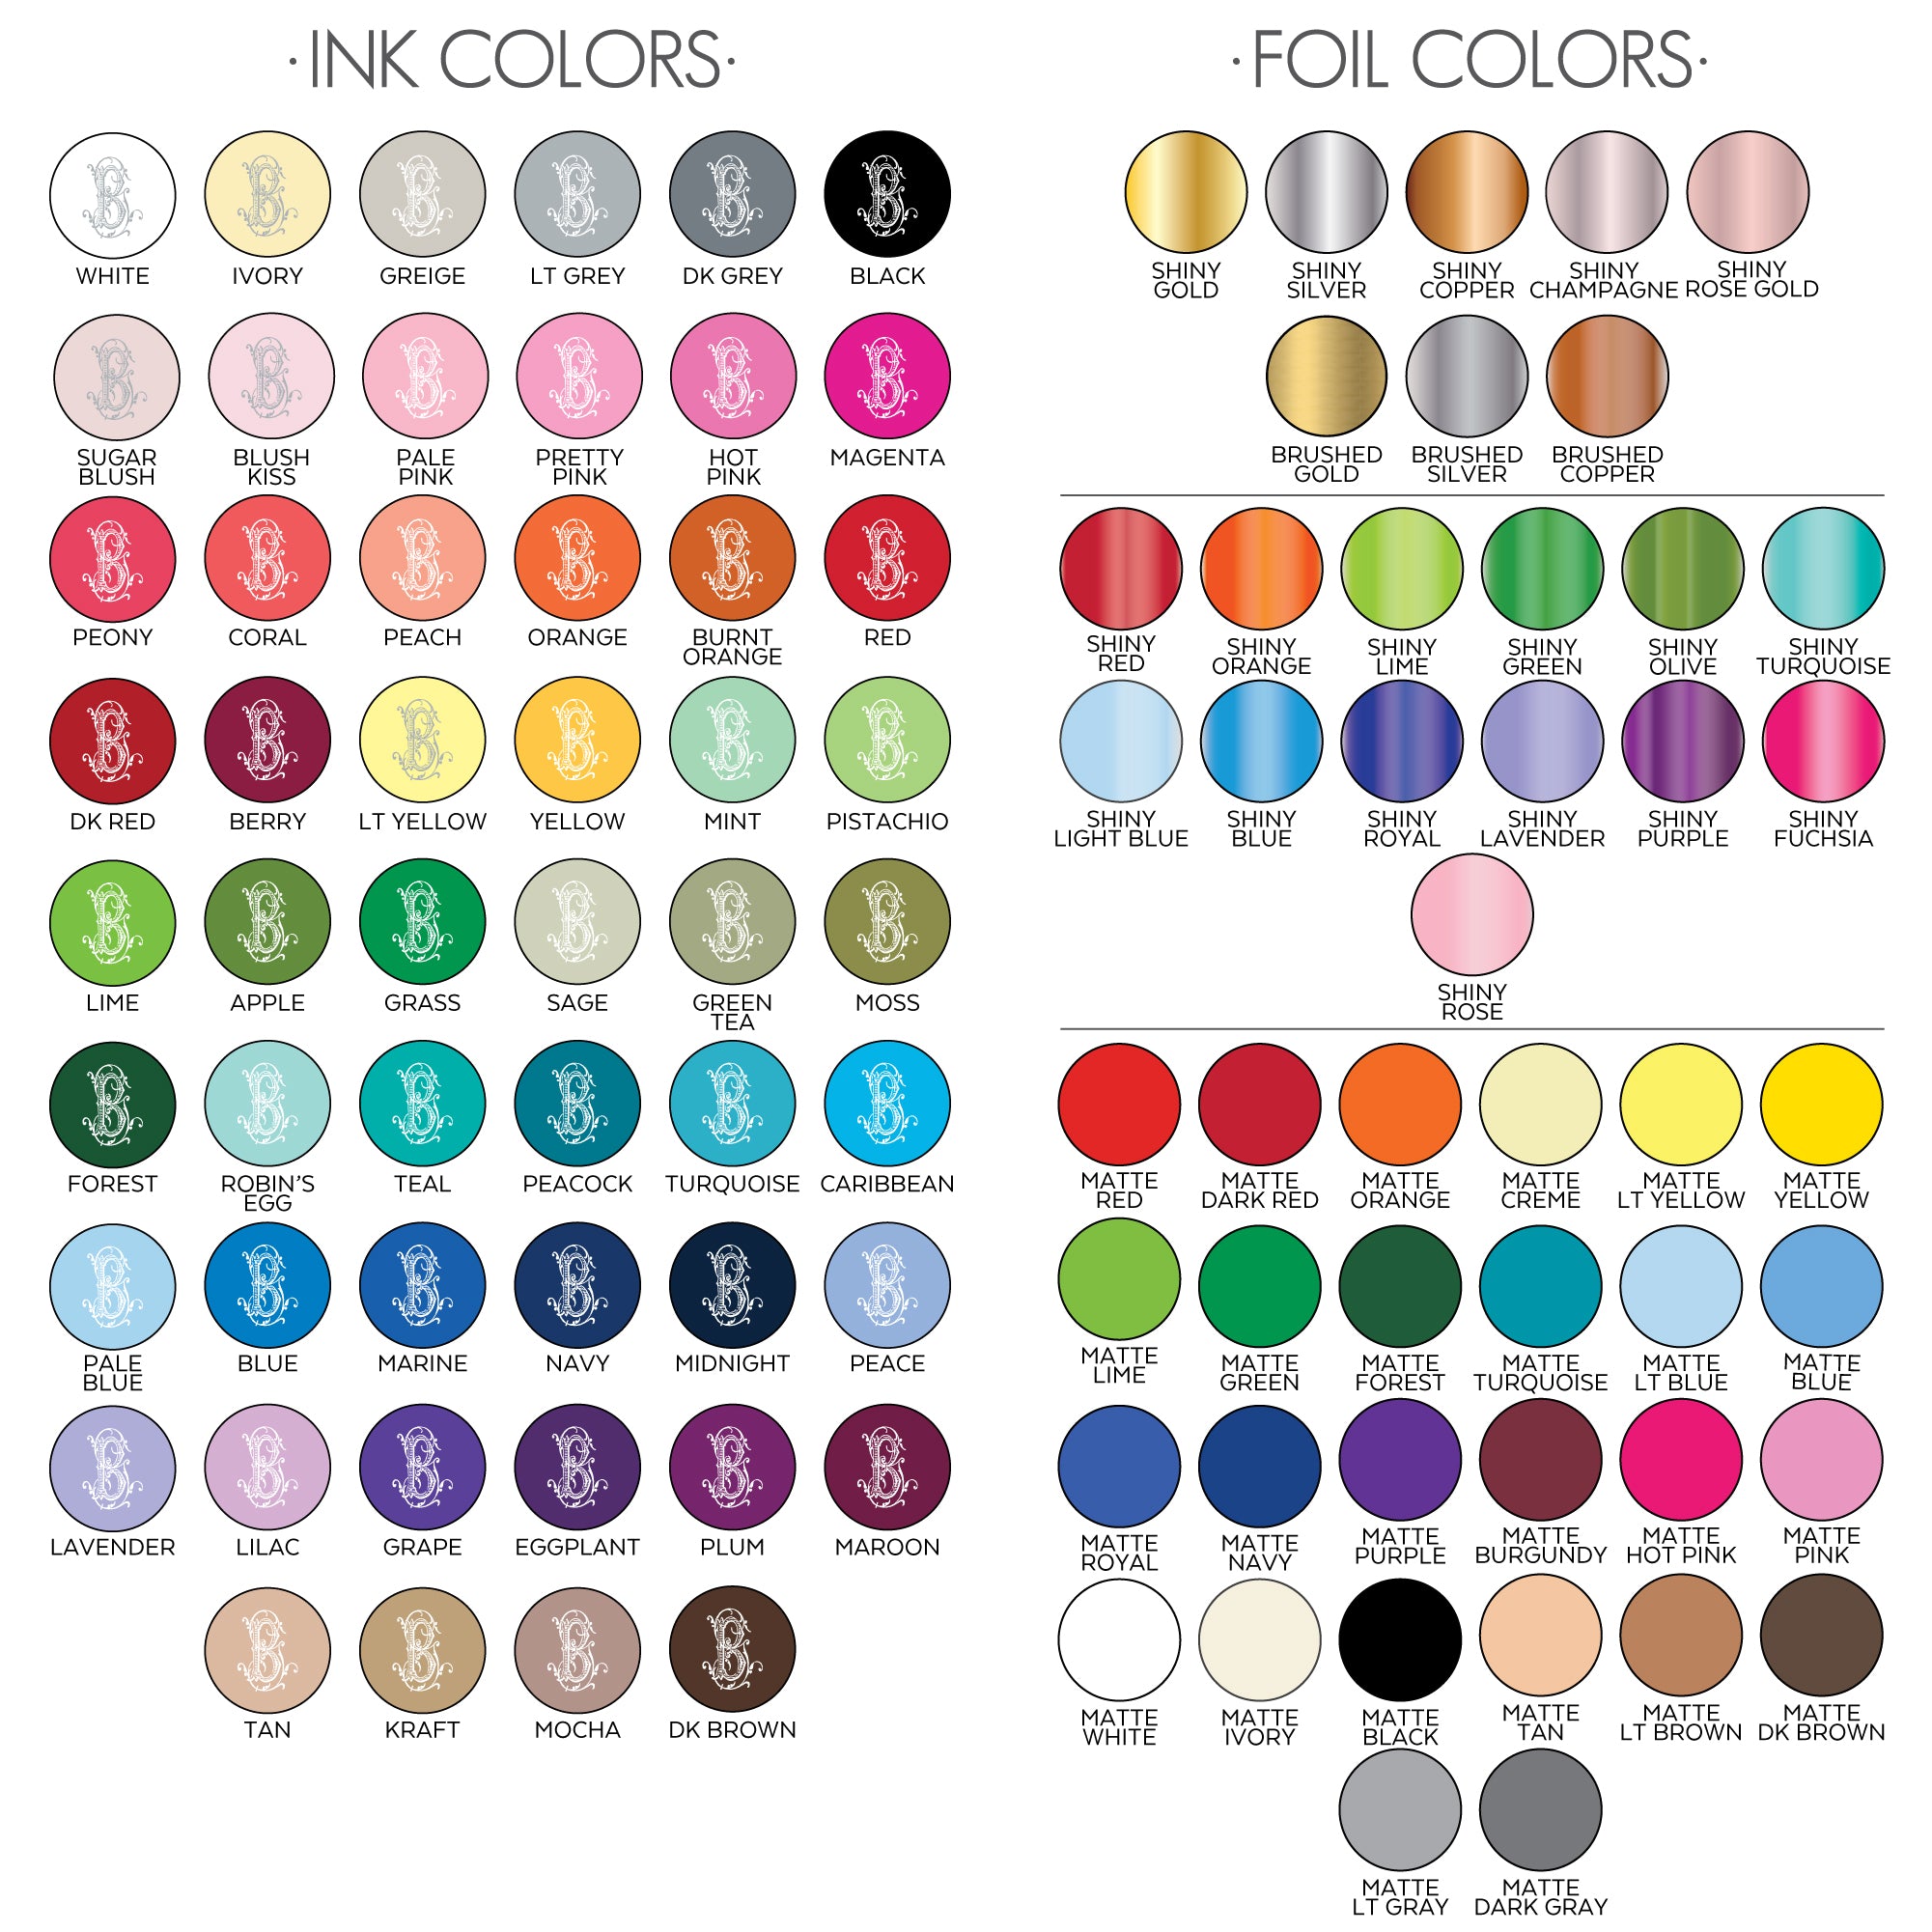 Ink Foil Colors